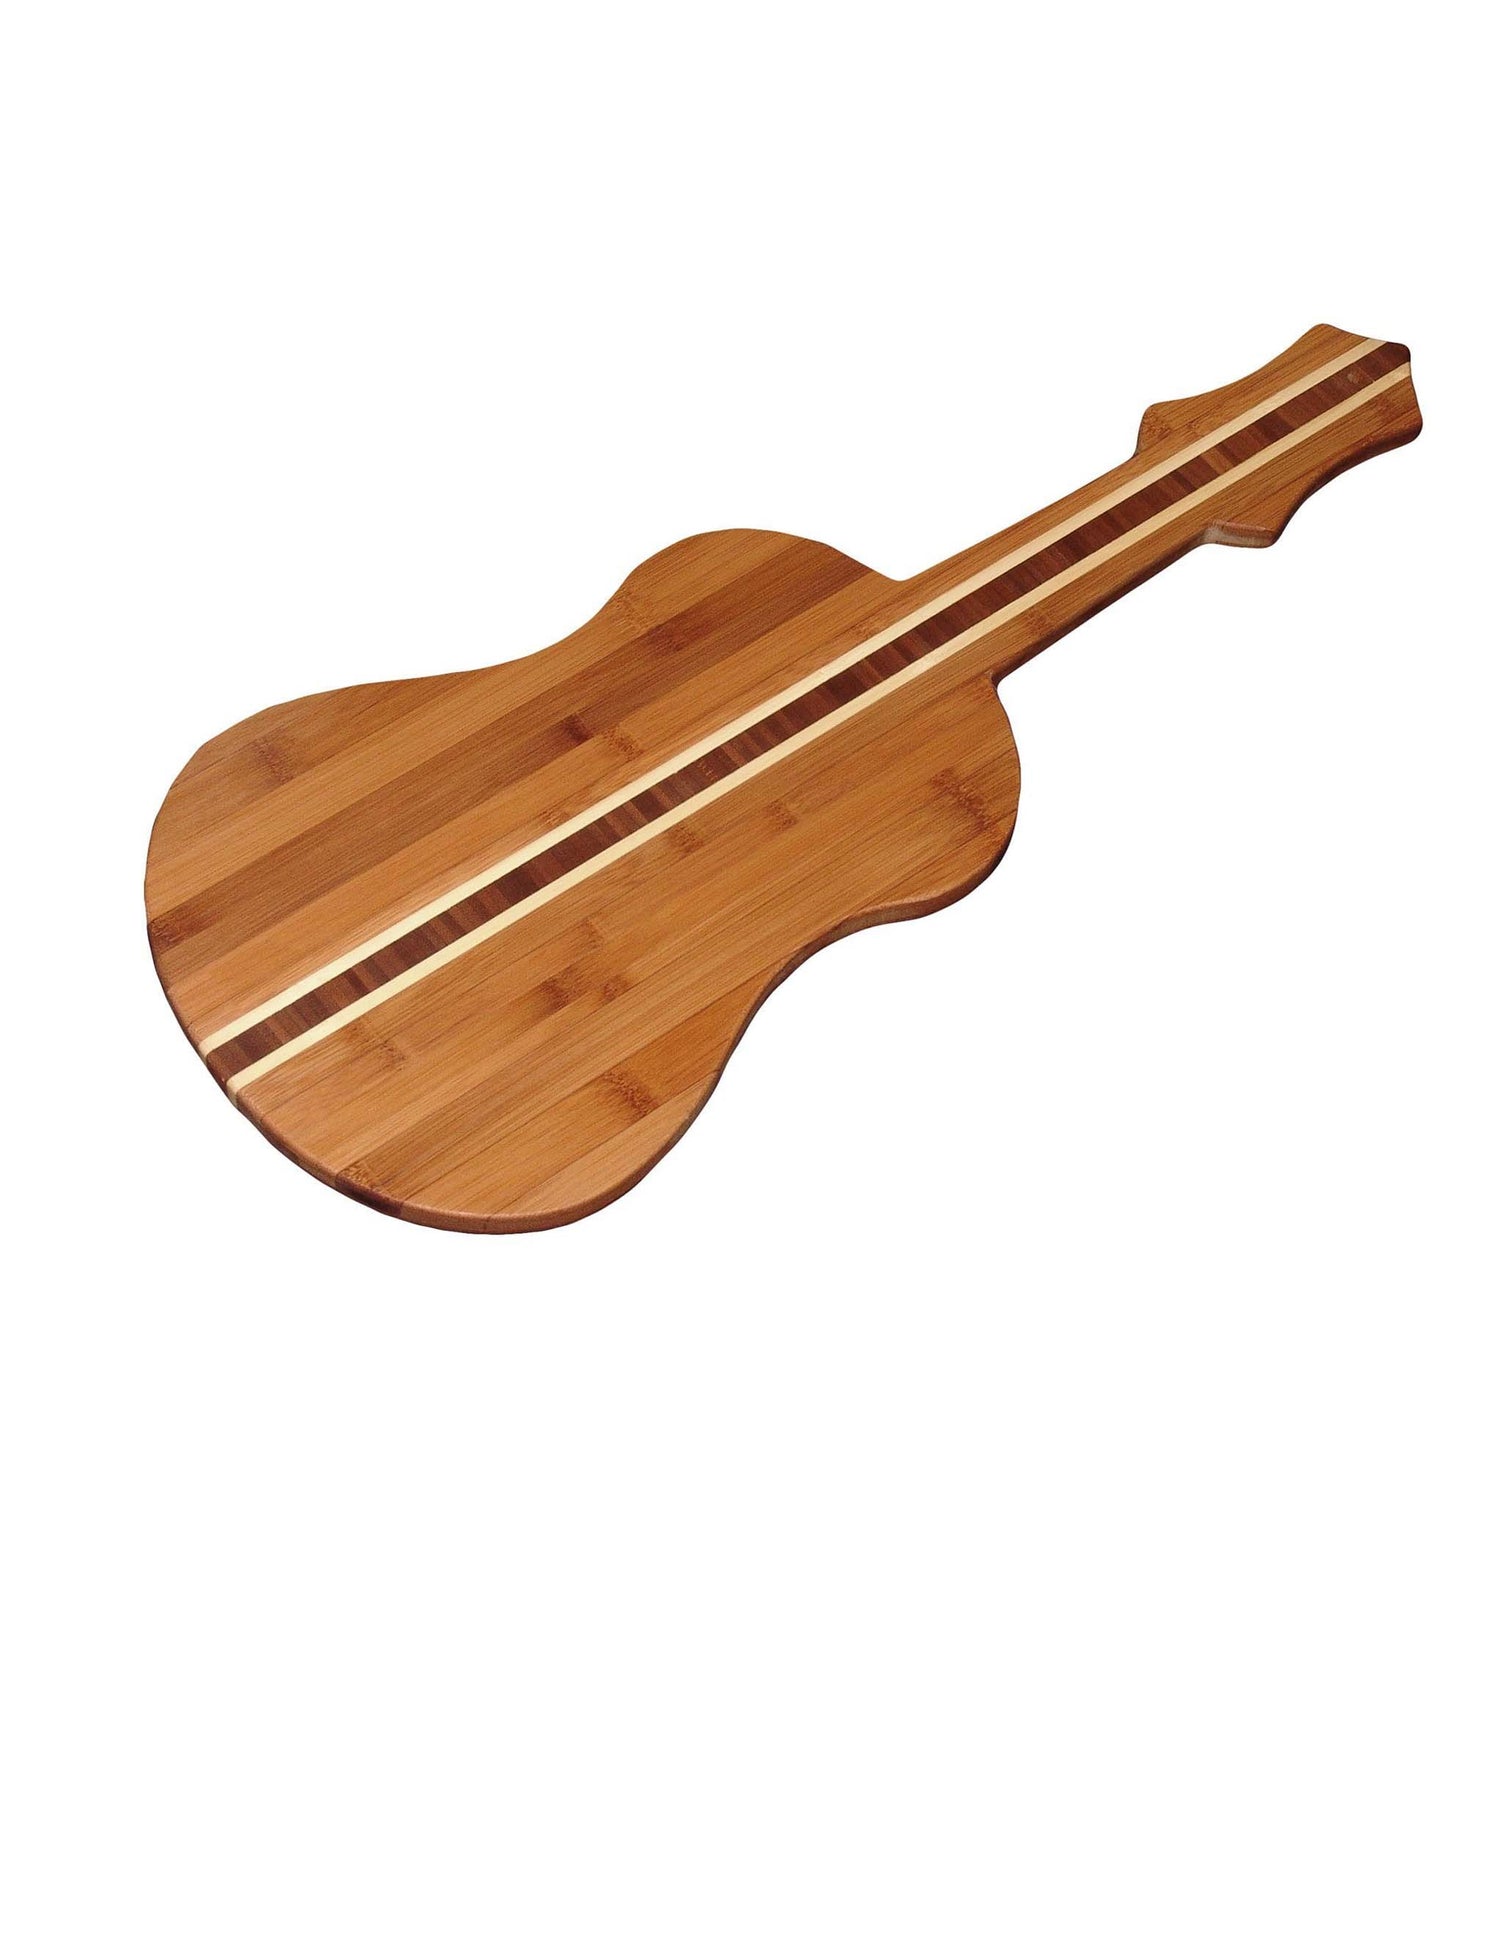 Guitar Bamboo Cutting Board